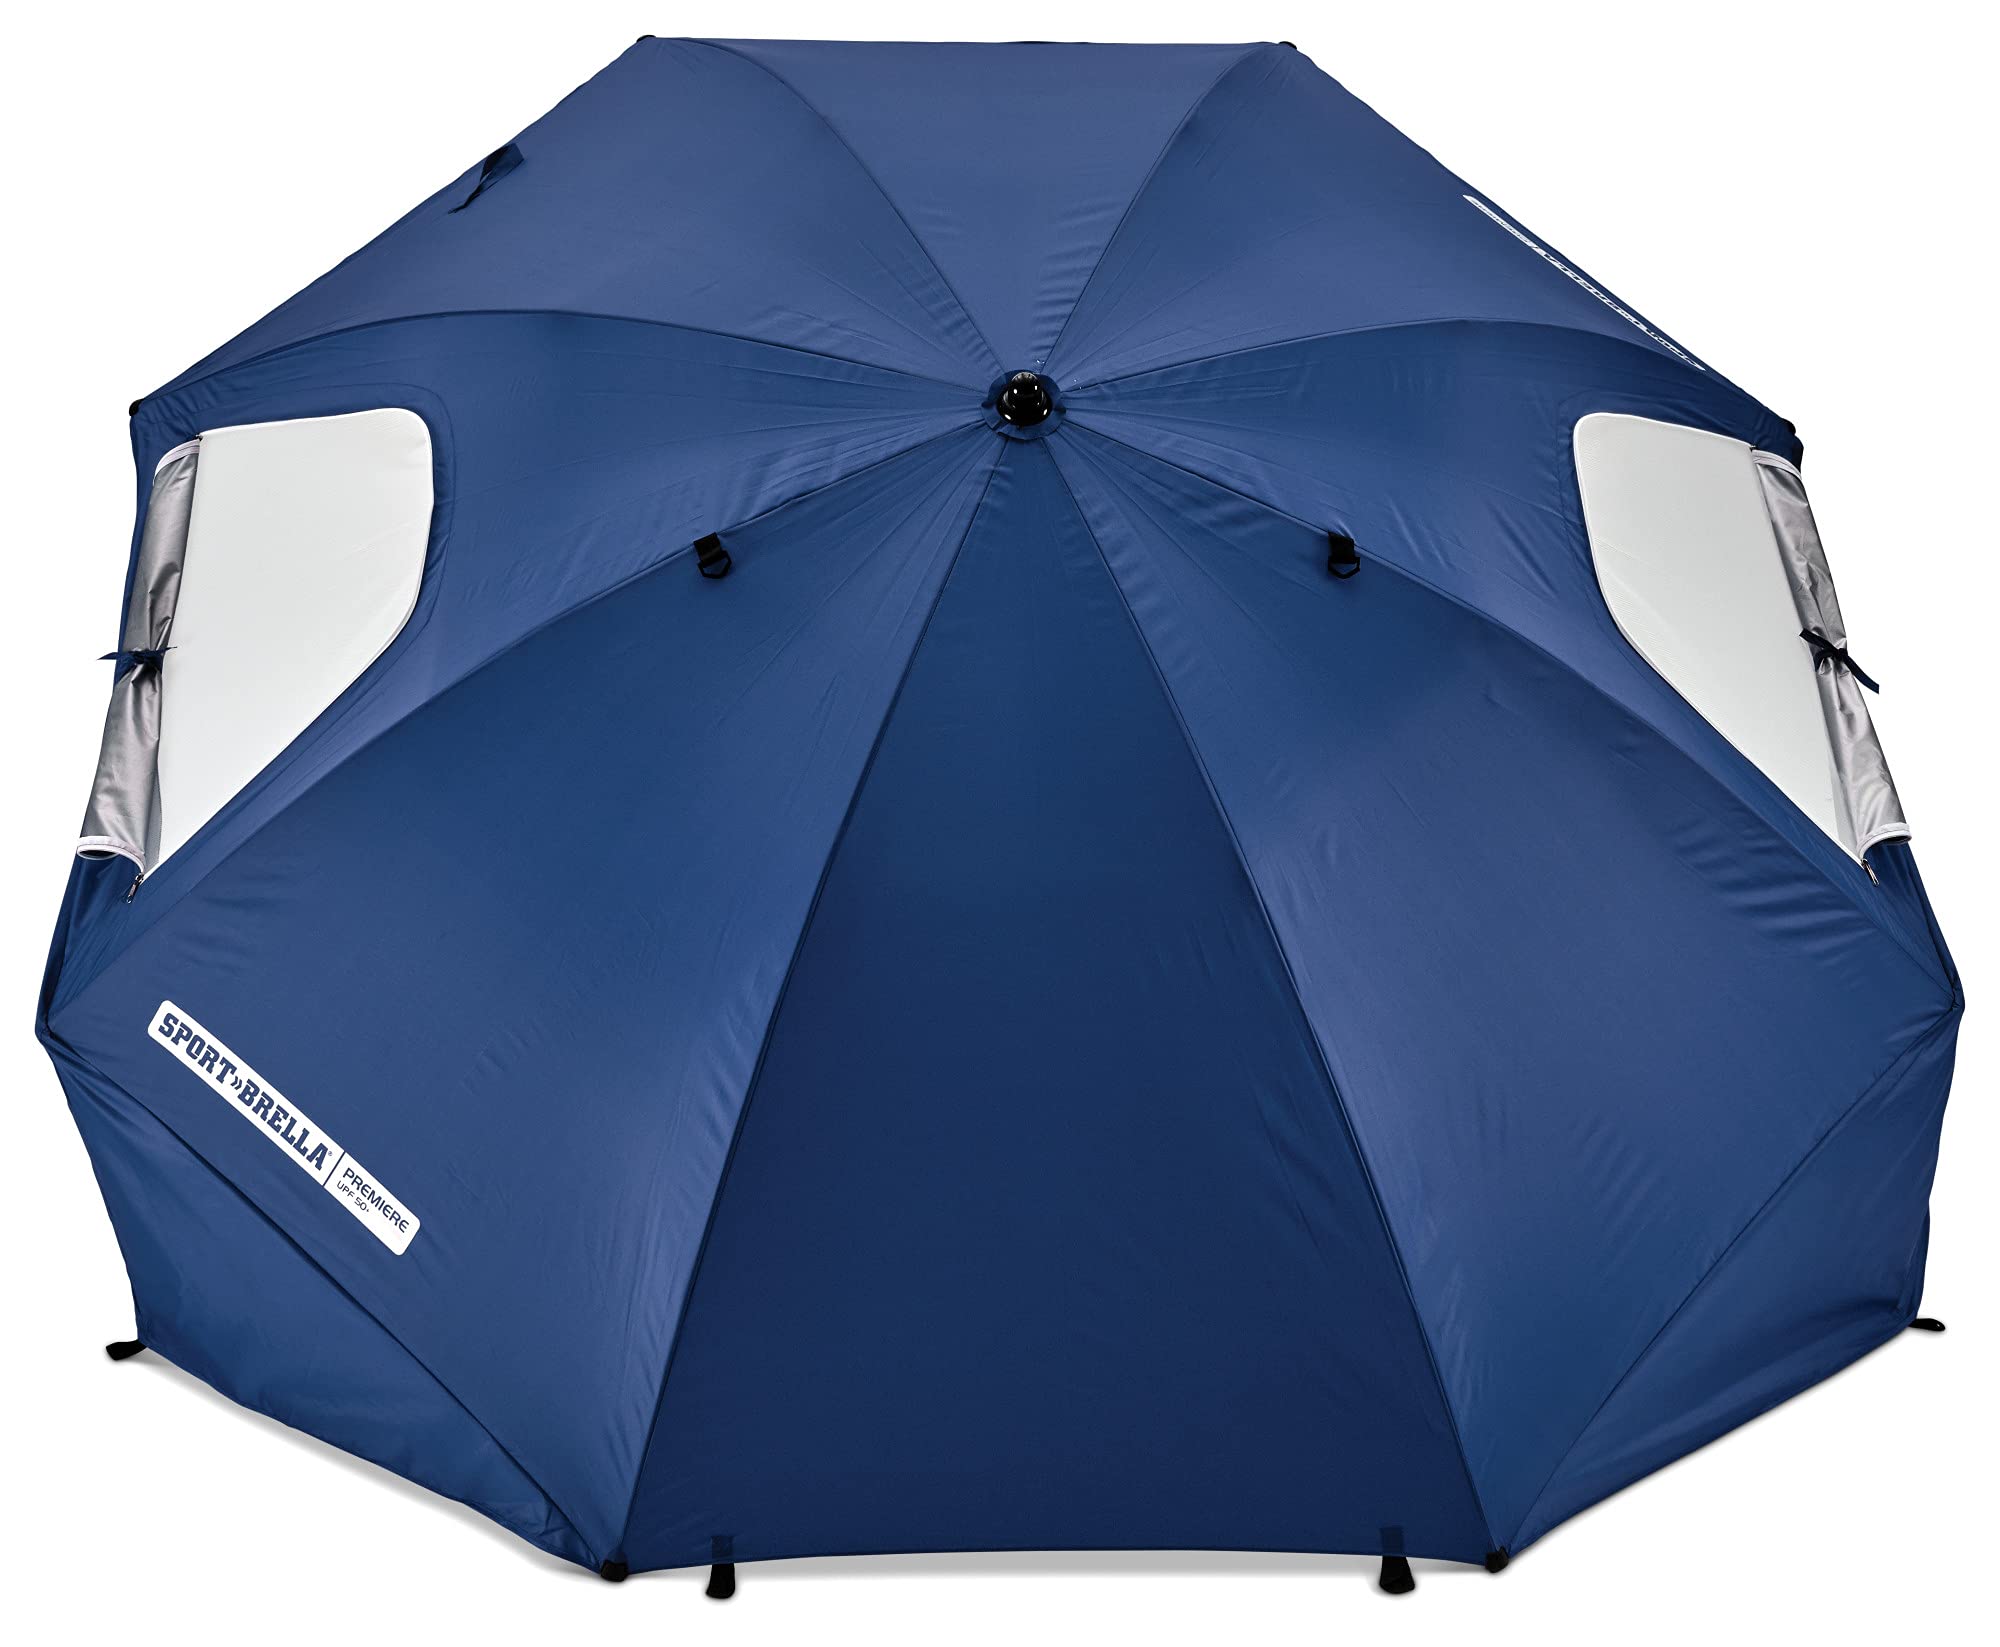 Sport-Brella Premiere UPF 50+ Umbrella Shelter for Sun and Rain Protection (8-Foot)